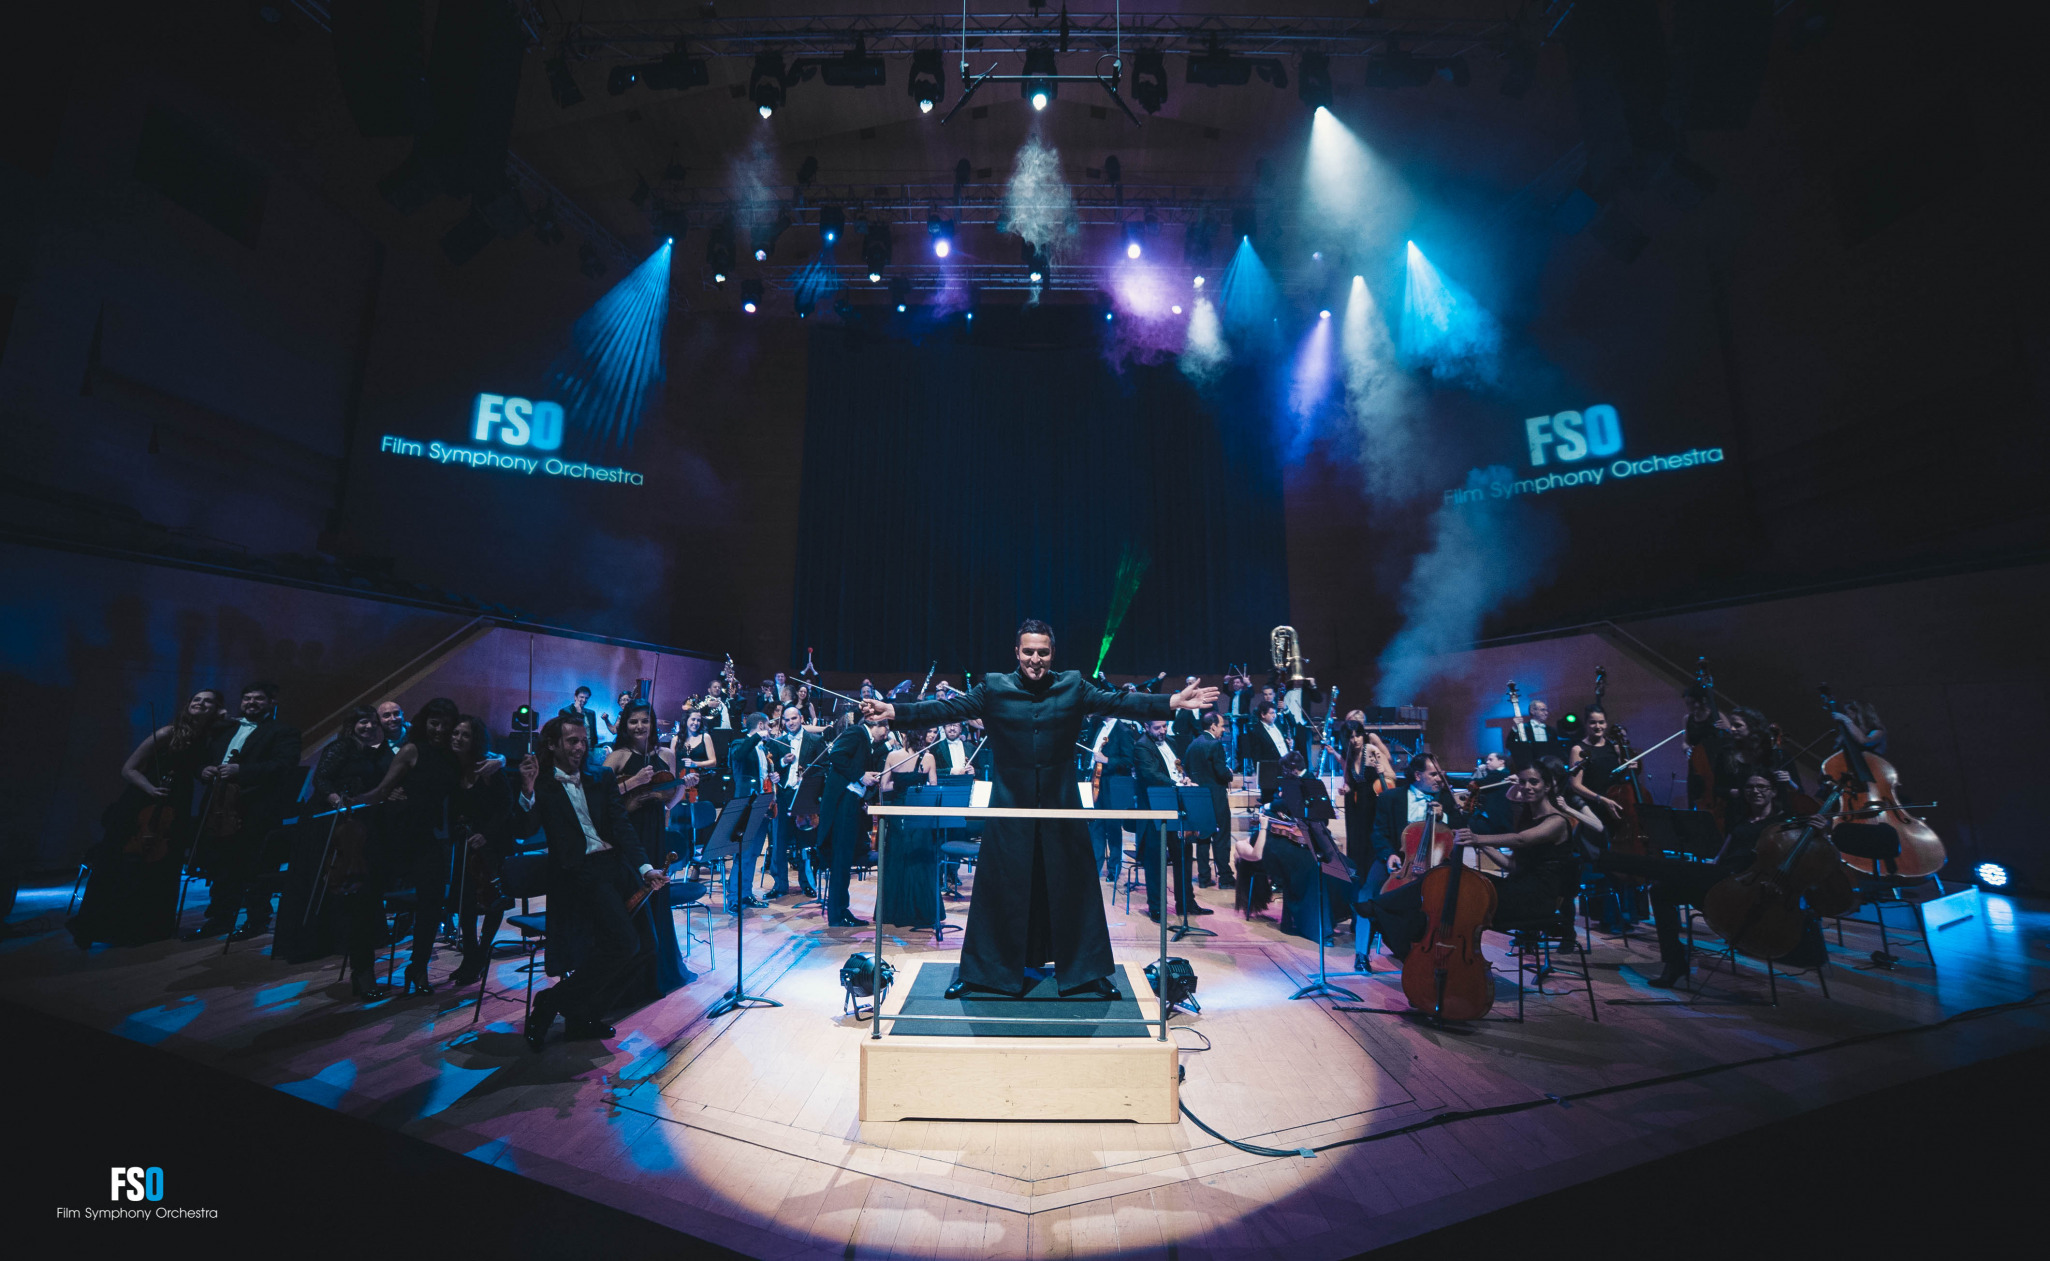 Film Symphony Orchestra llega con su nueva gira al Palacio de Congresos de Granada